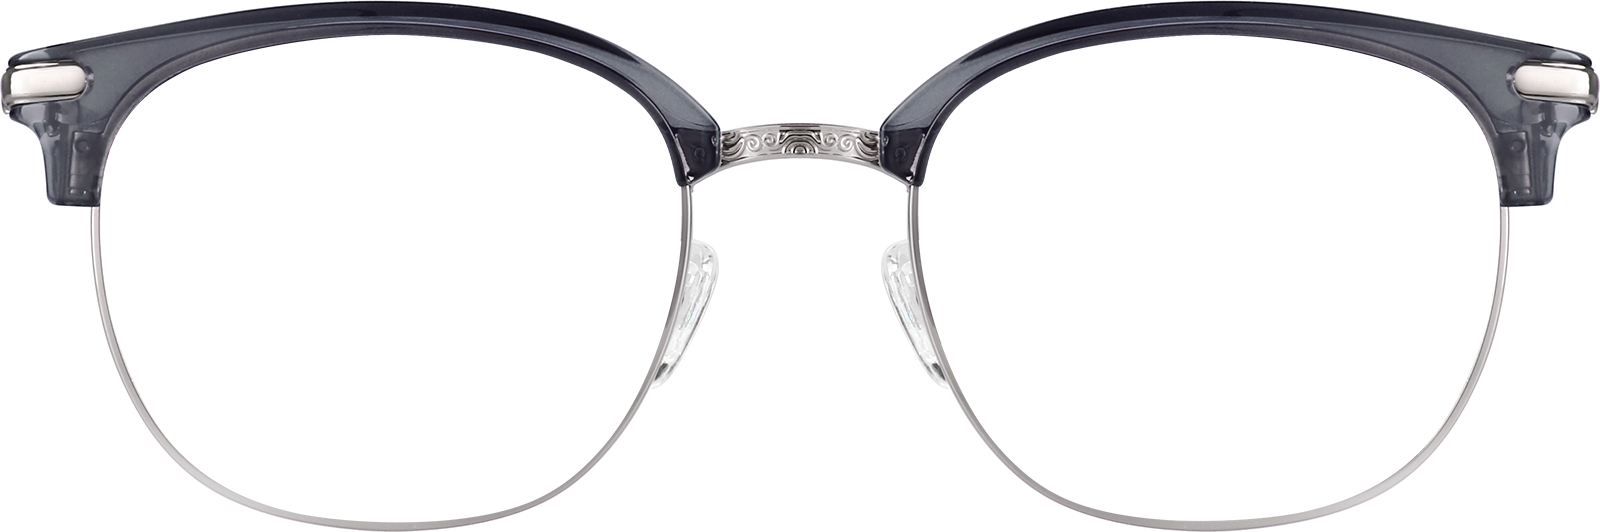 Browline Glasseslens frame image